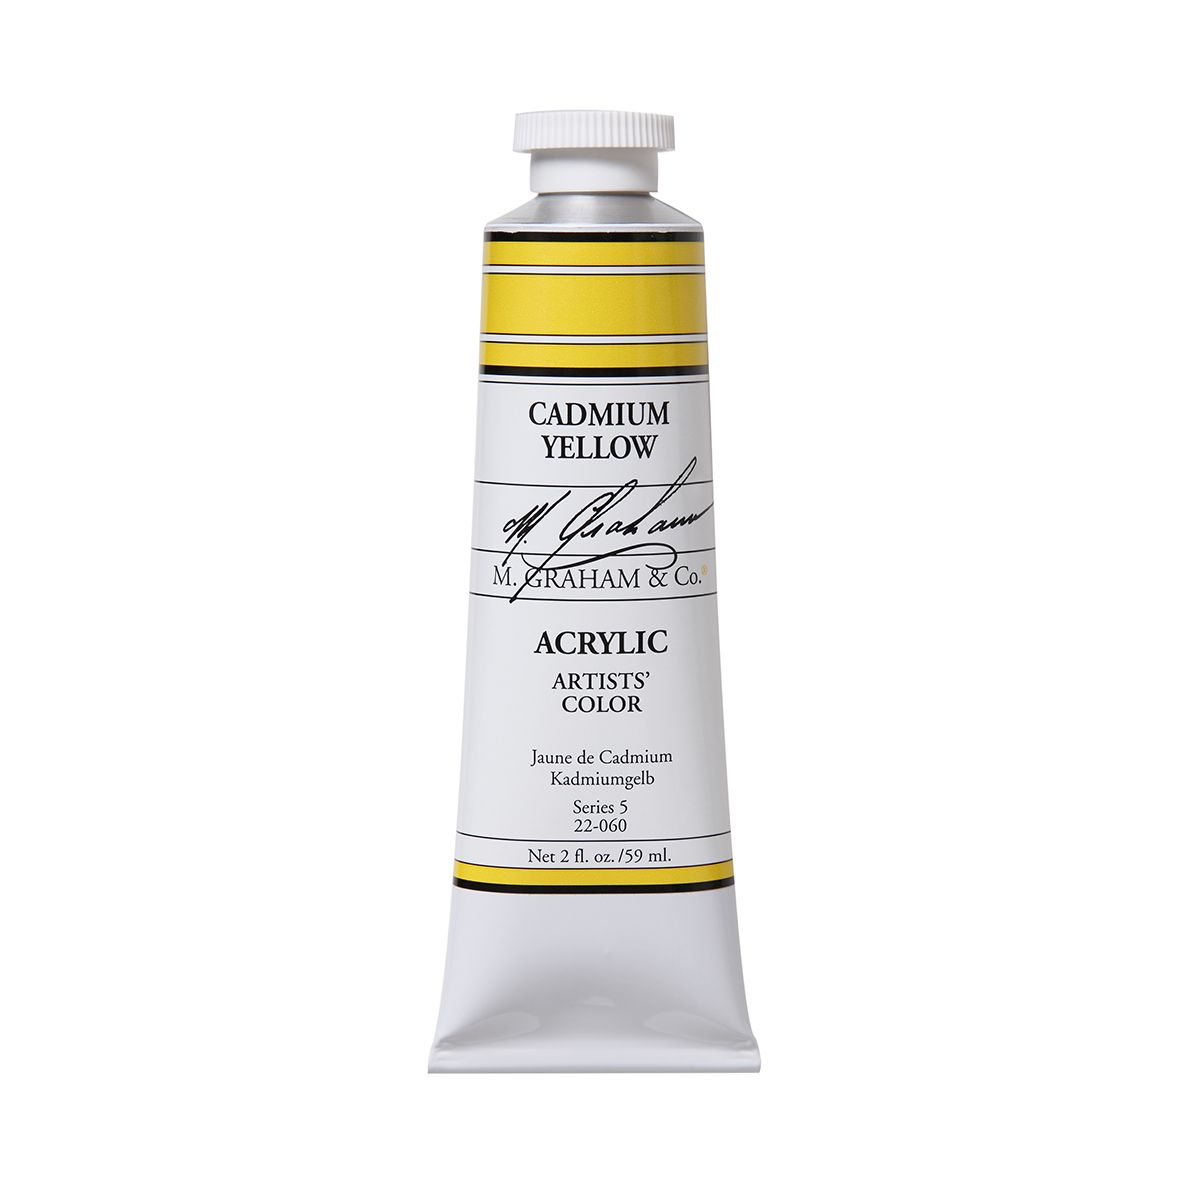 M Graham Acrylic - Cadmium Yellow 59 ml